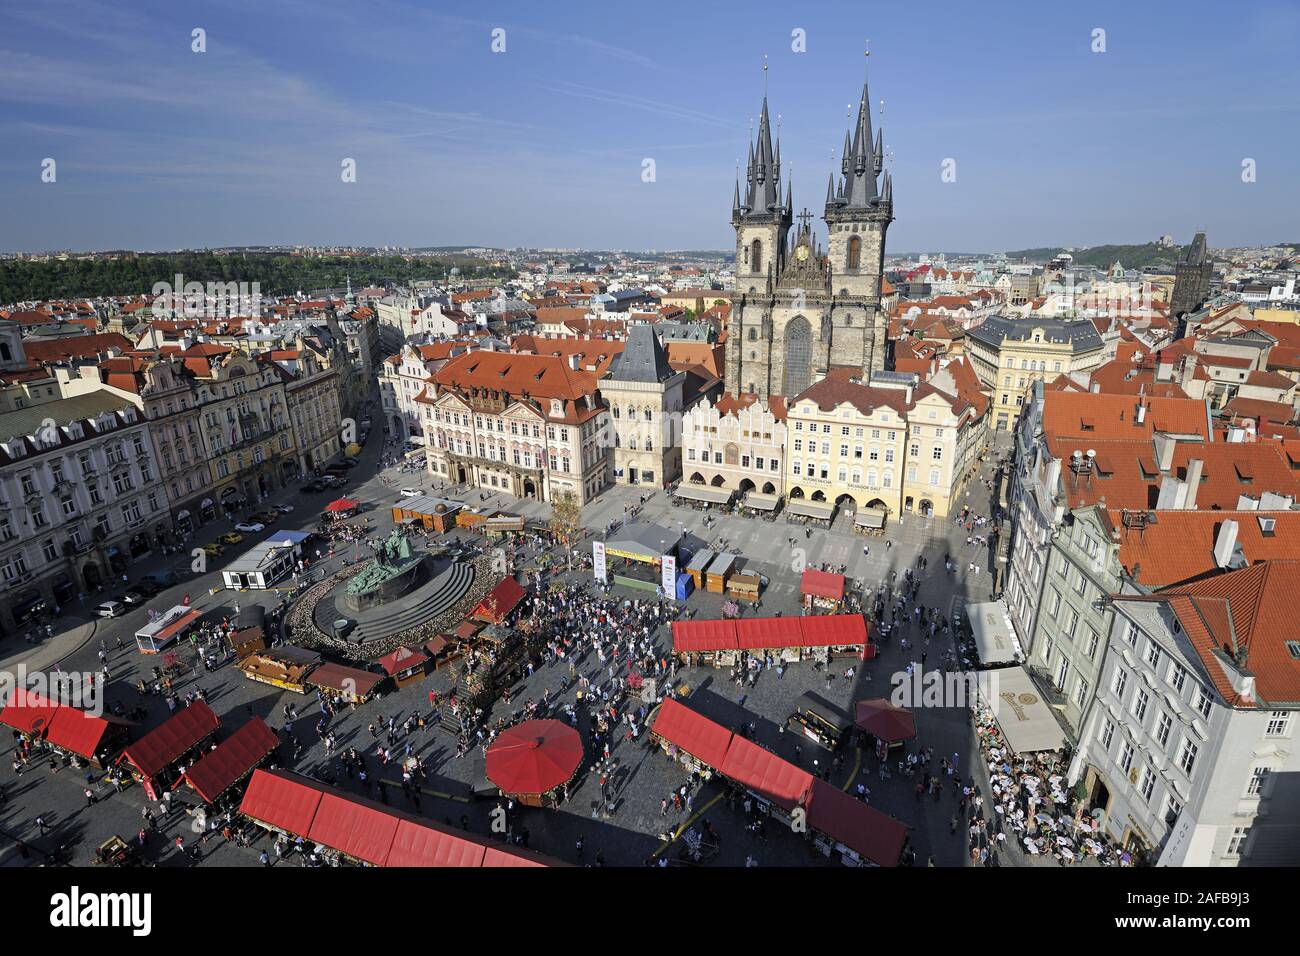 Blick vom Rathausturm ueber den Altstaedter anello, Altstadt von Prag, Tschechische Republik, Europa Foto Stock